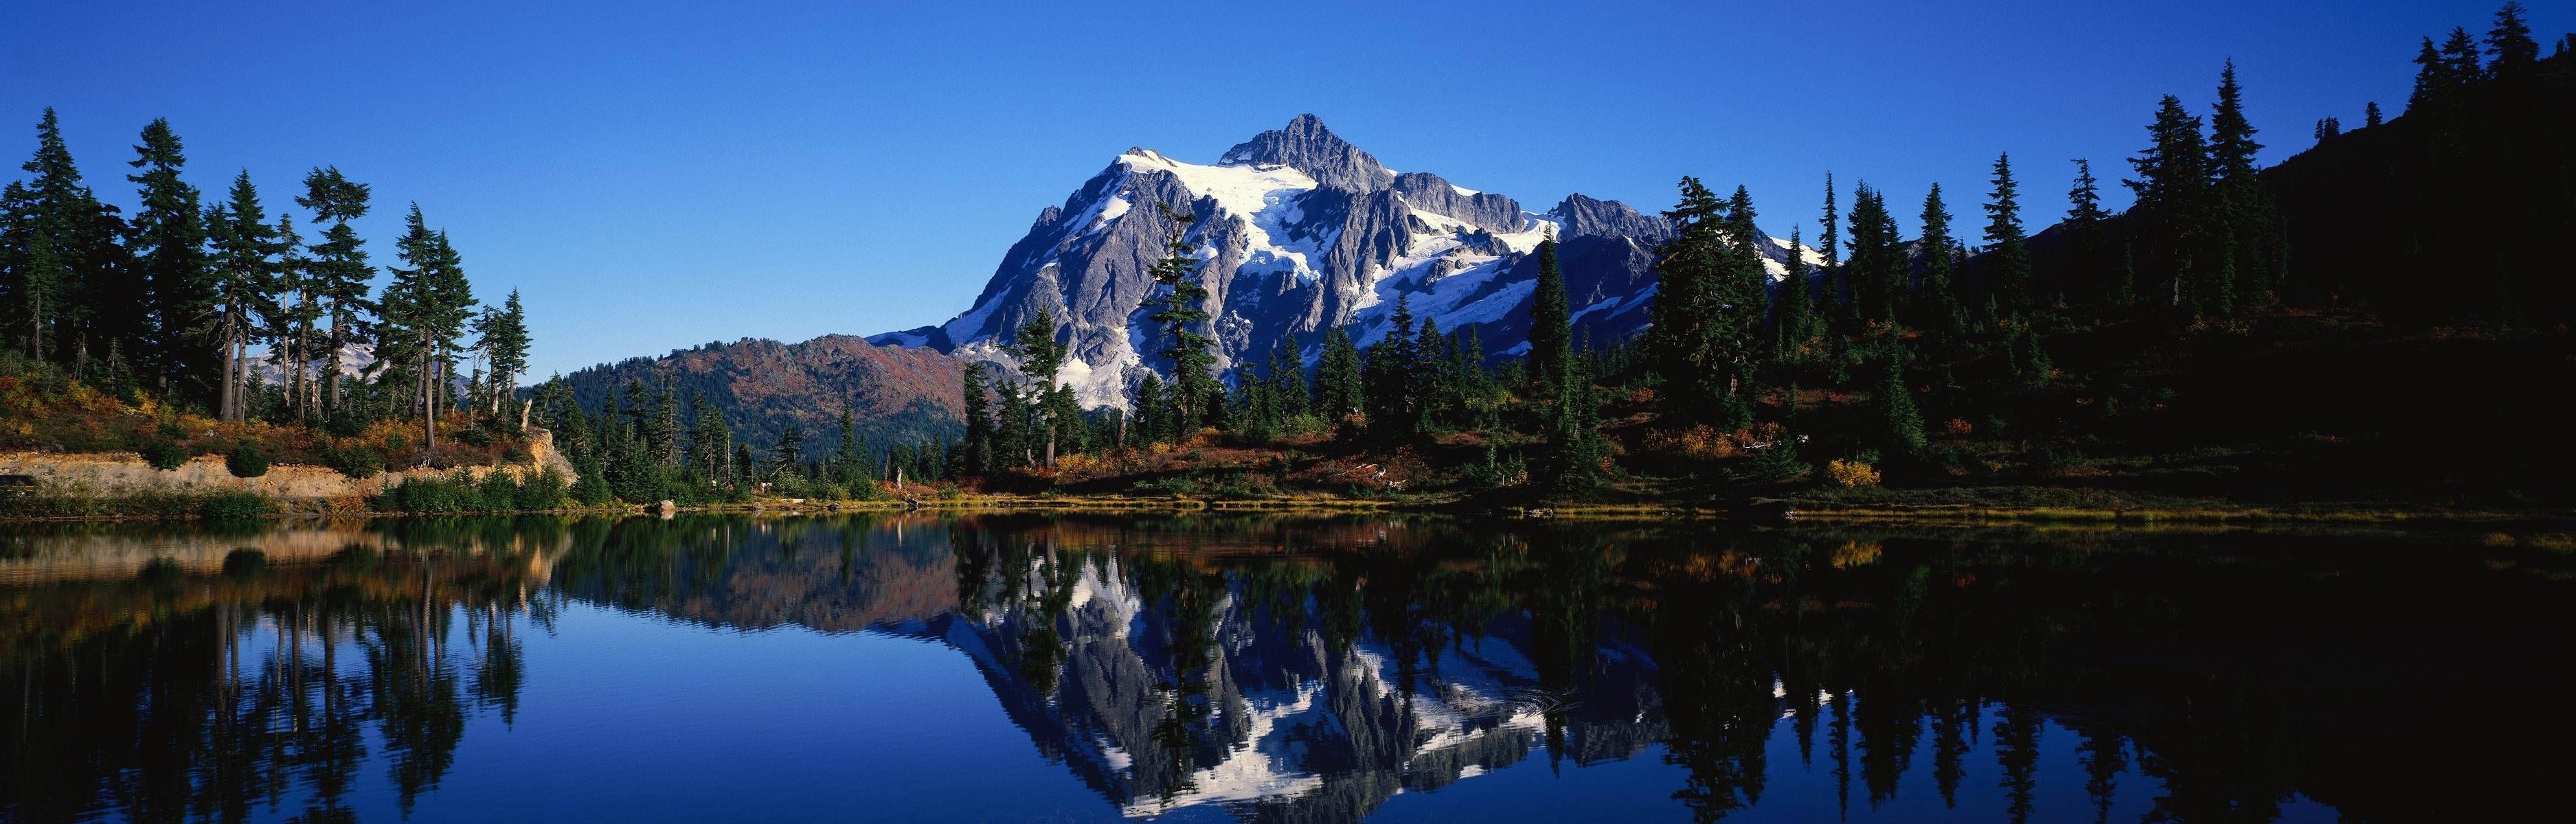 Mount Rainier National Park, Breathtaking Lakes, Picturesque Landscapes, Panoramic Views, 3750x1200 Dual Screen Desktop